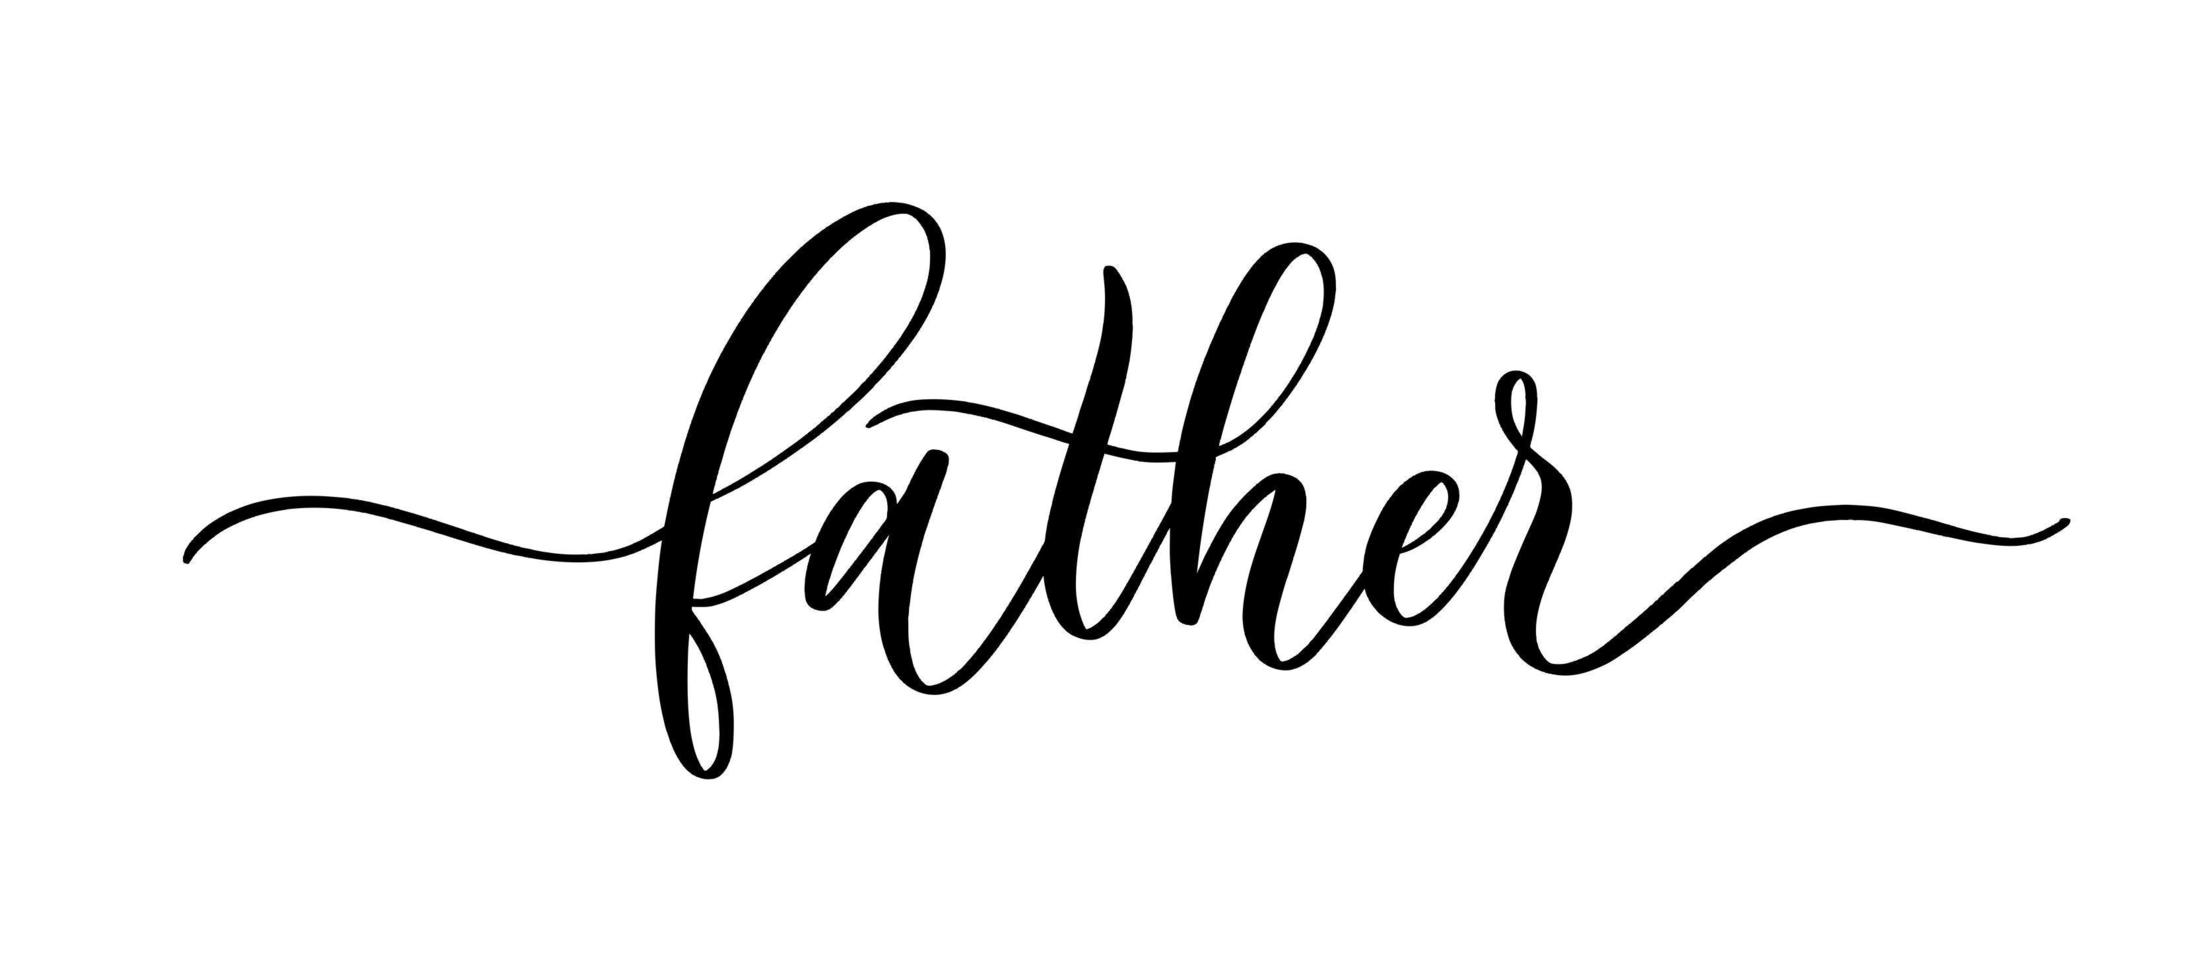 inscrição caligráfica de vetor pai com linhas suaves. ilustração de letras de mão minimalista no dia dos pais feliz.